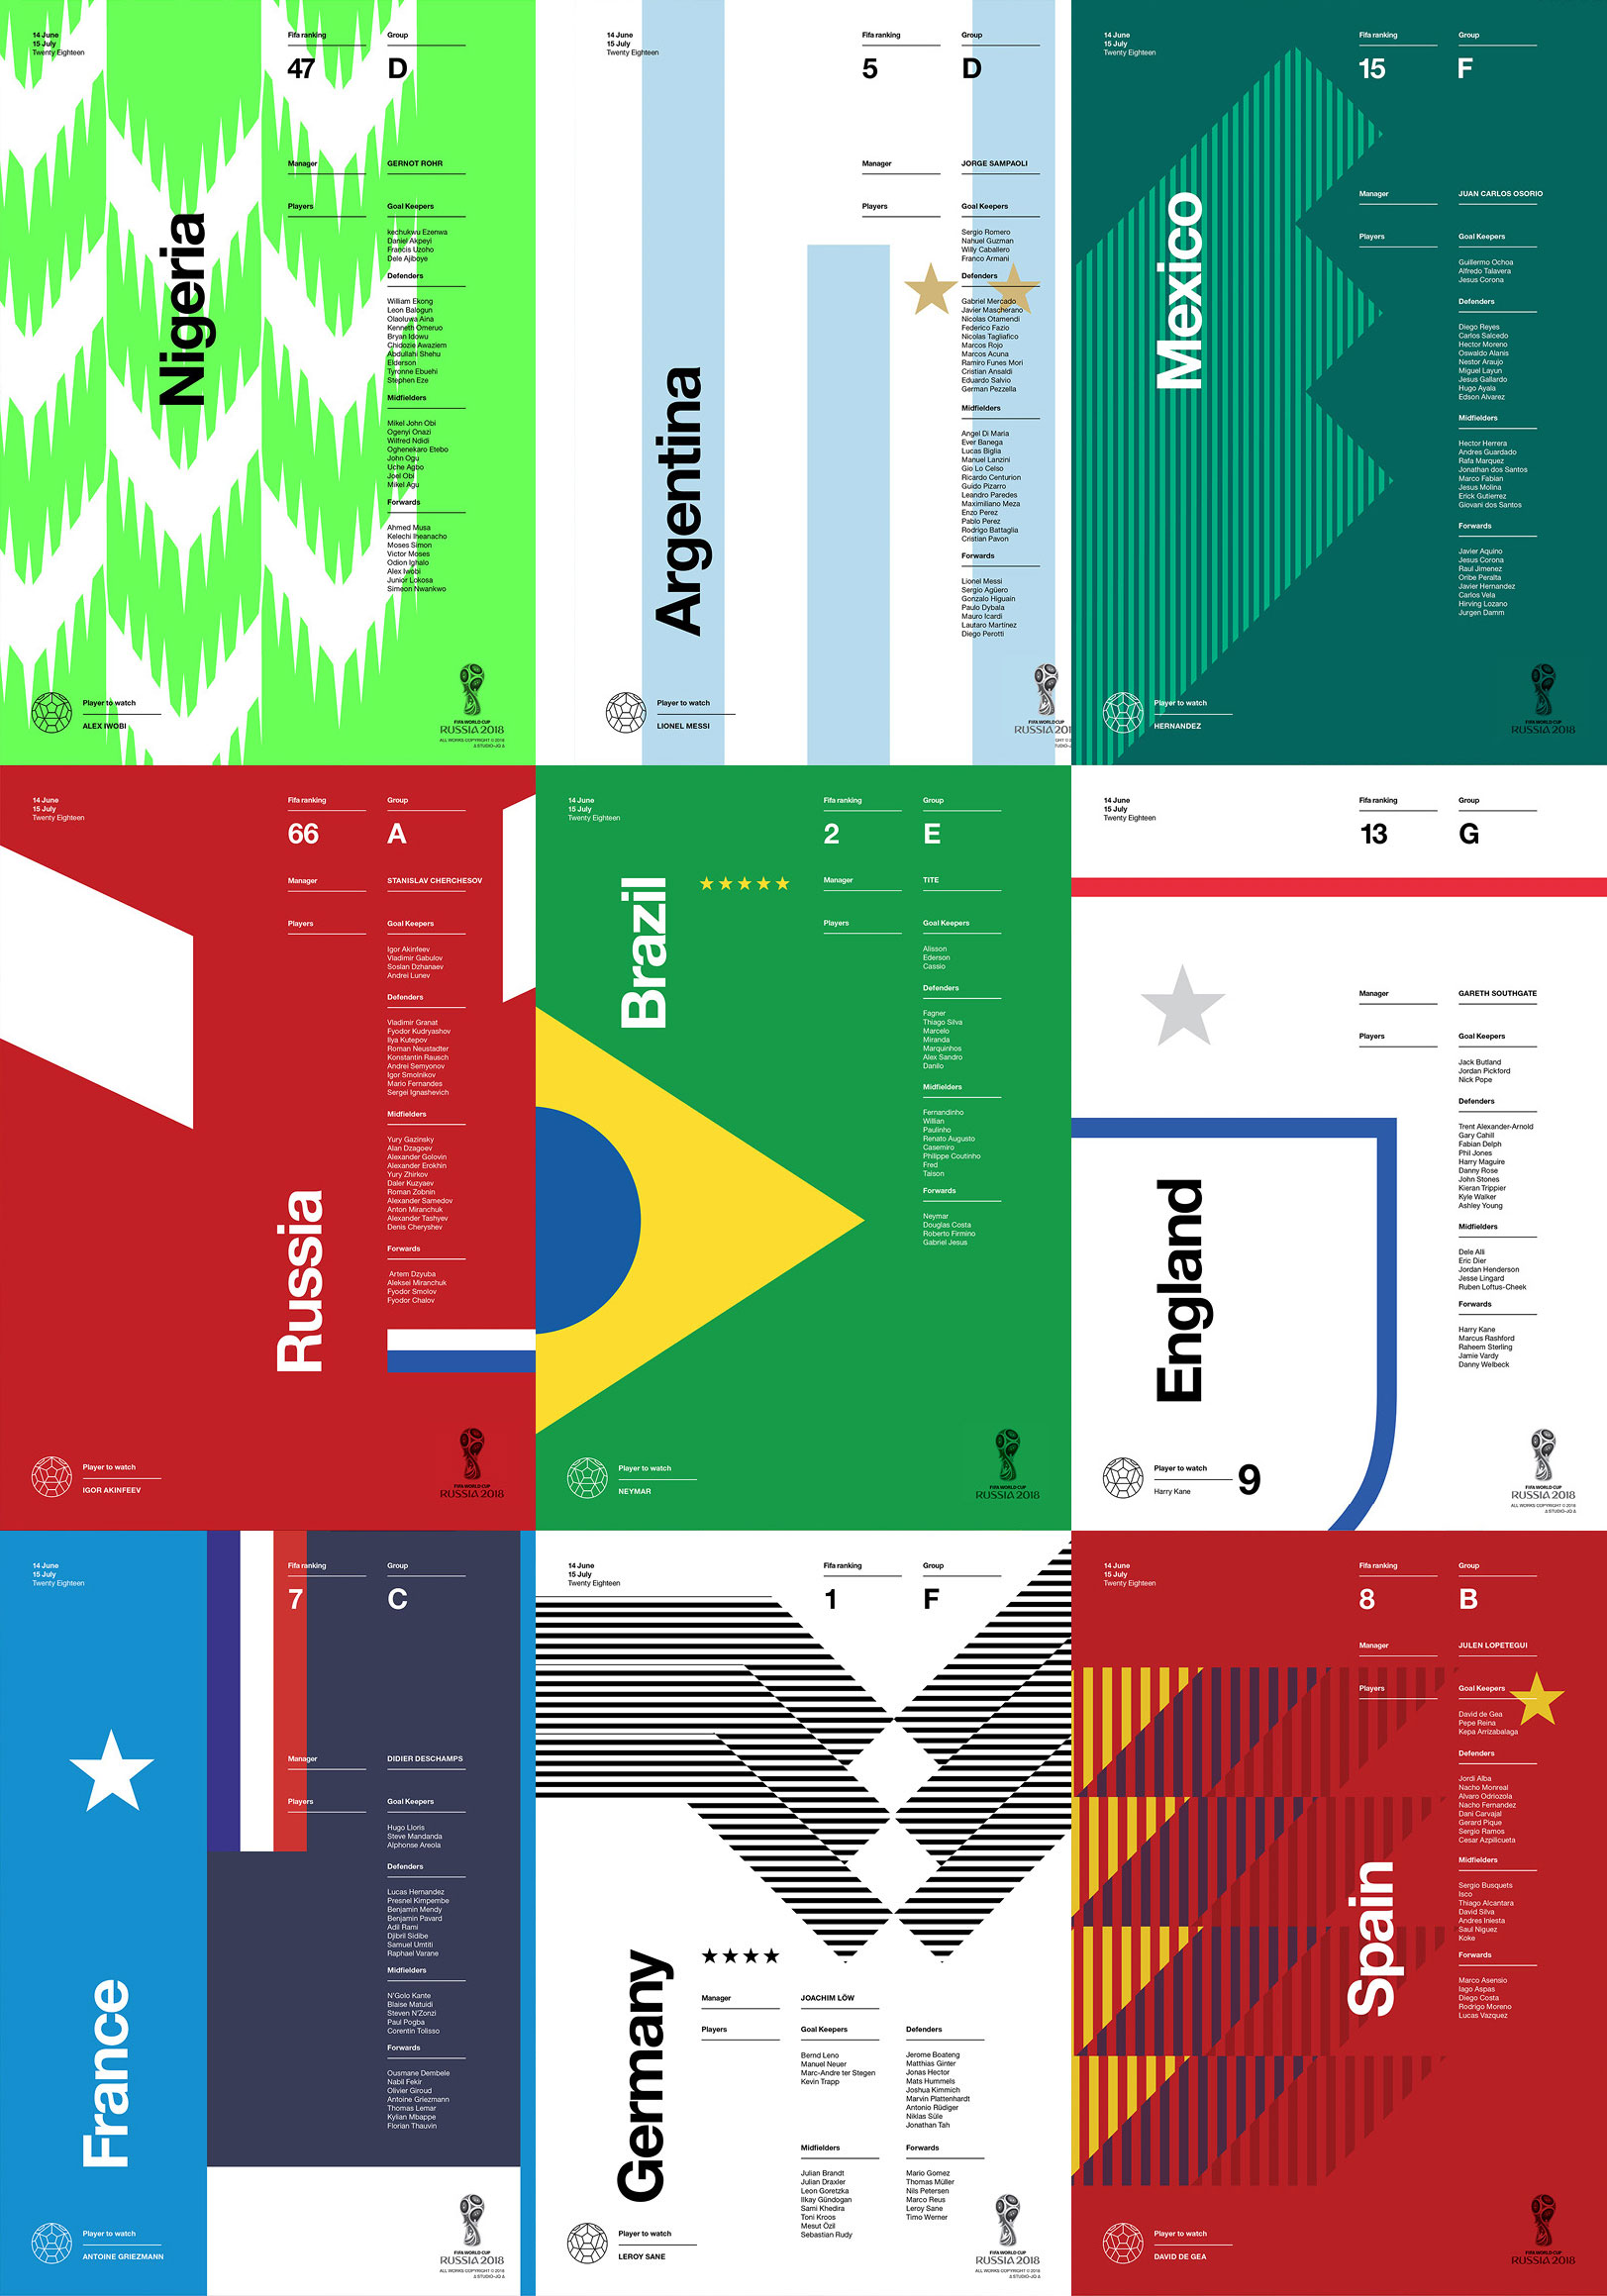 2018年俄罗斯世界杯参赛国家队海报设计